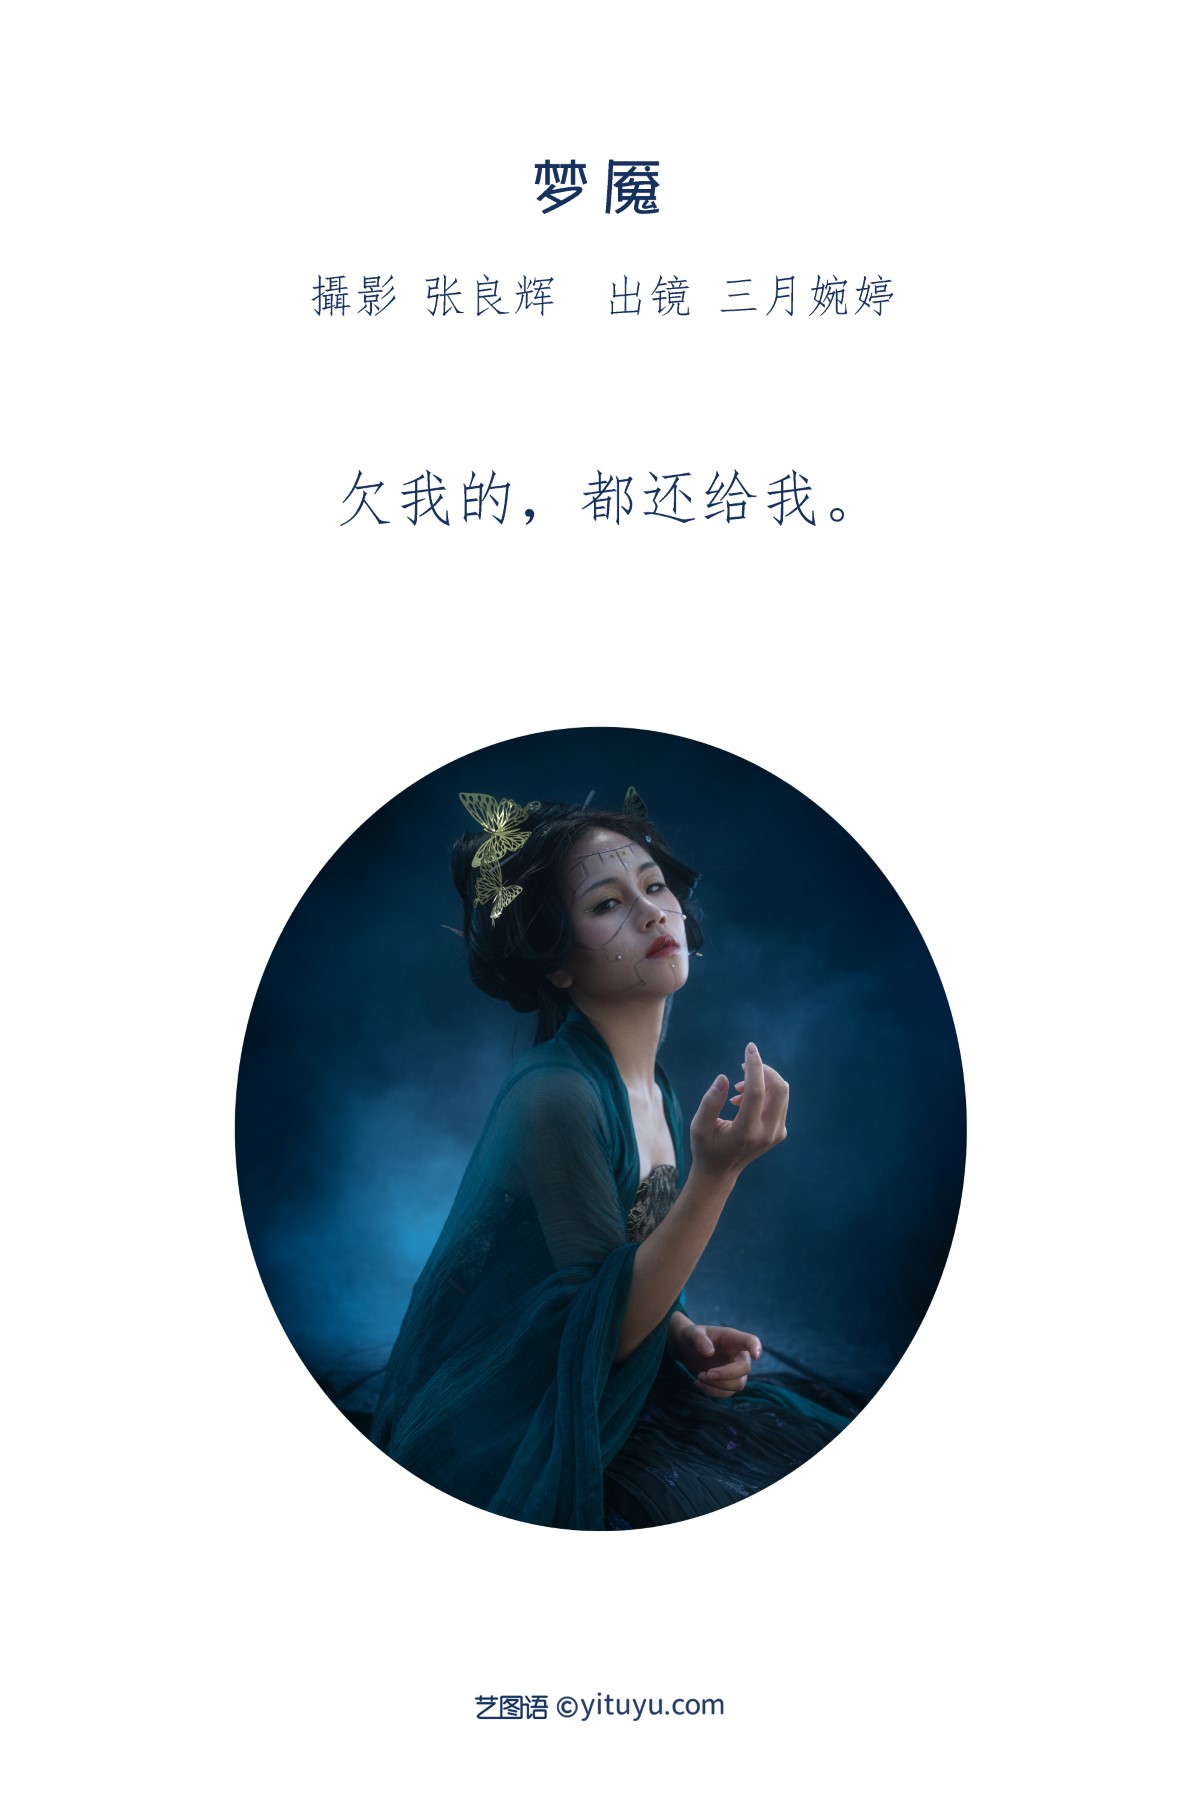 YiTuYu艺图语 Vol 1863 San Yue Wan Ting 0001 4592503131.jpg